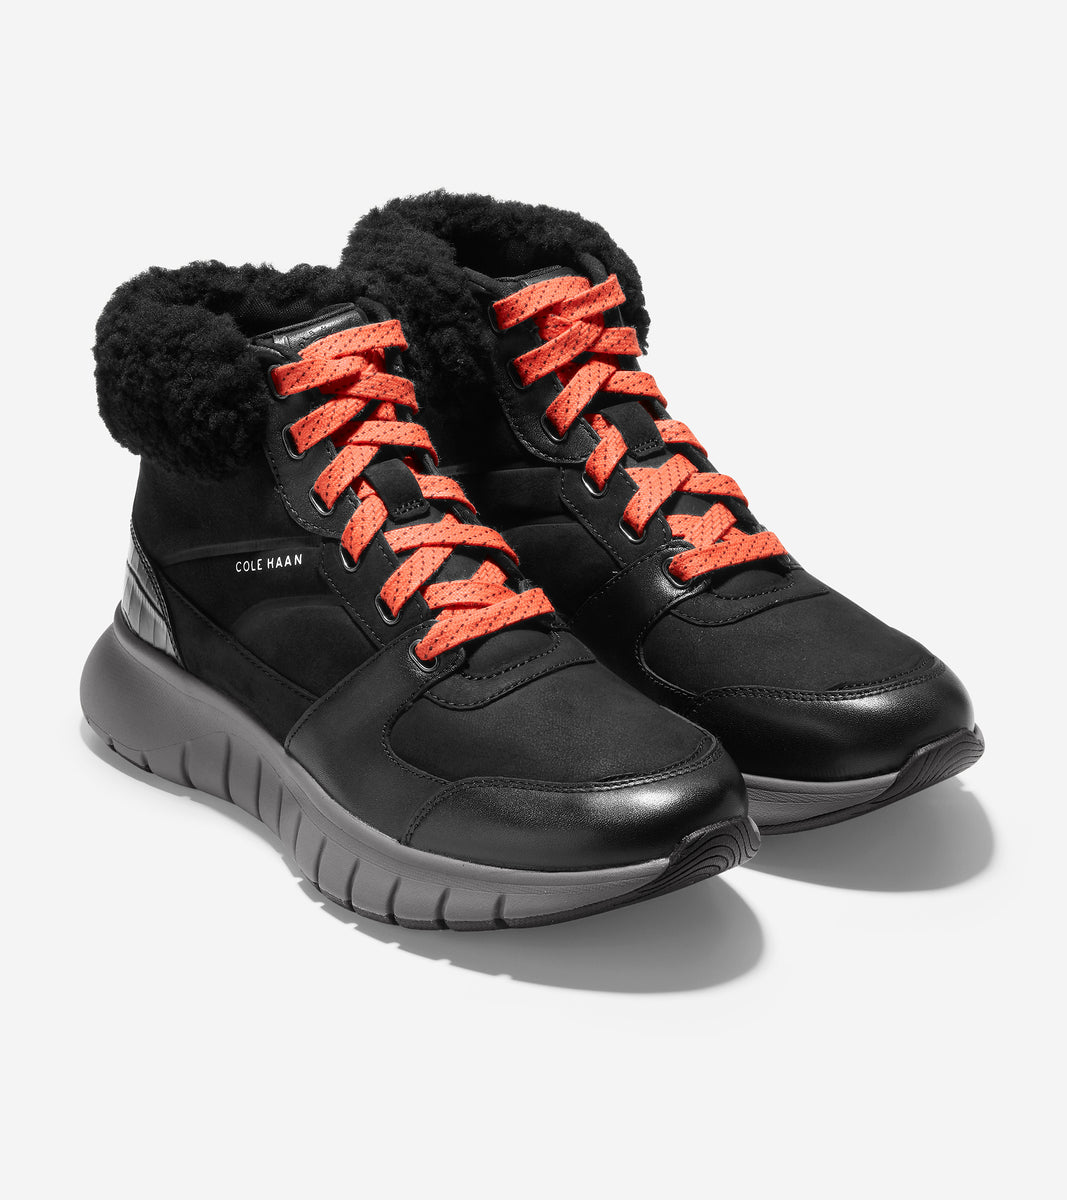 W22565-ZERØGRAND Flex Sneaker Boot -Black Leather 